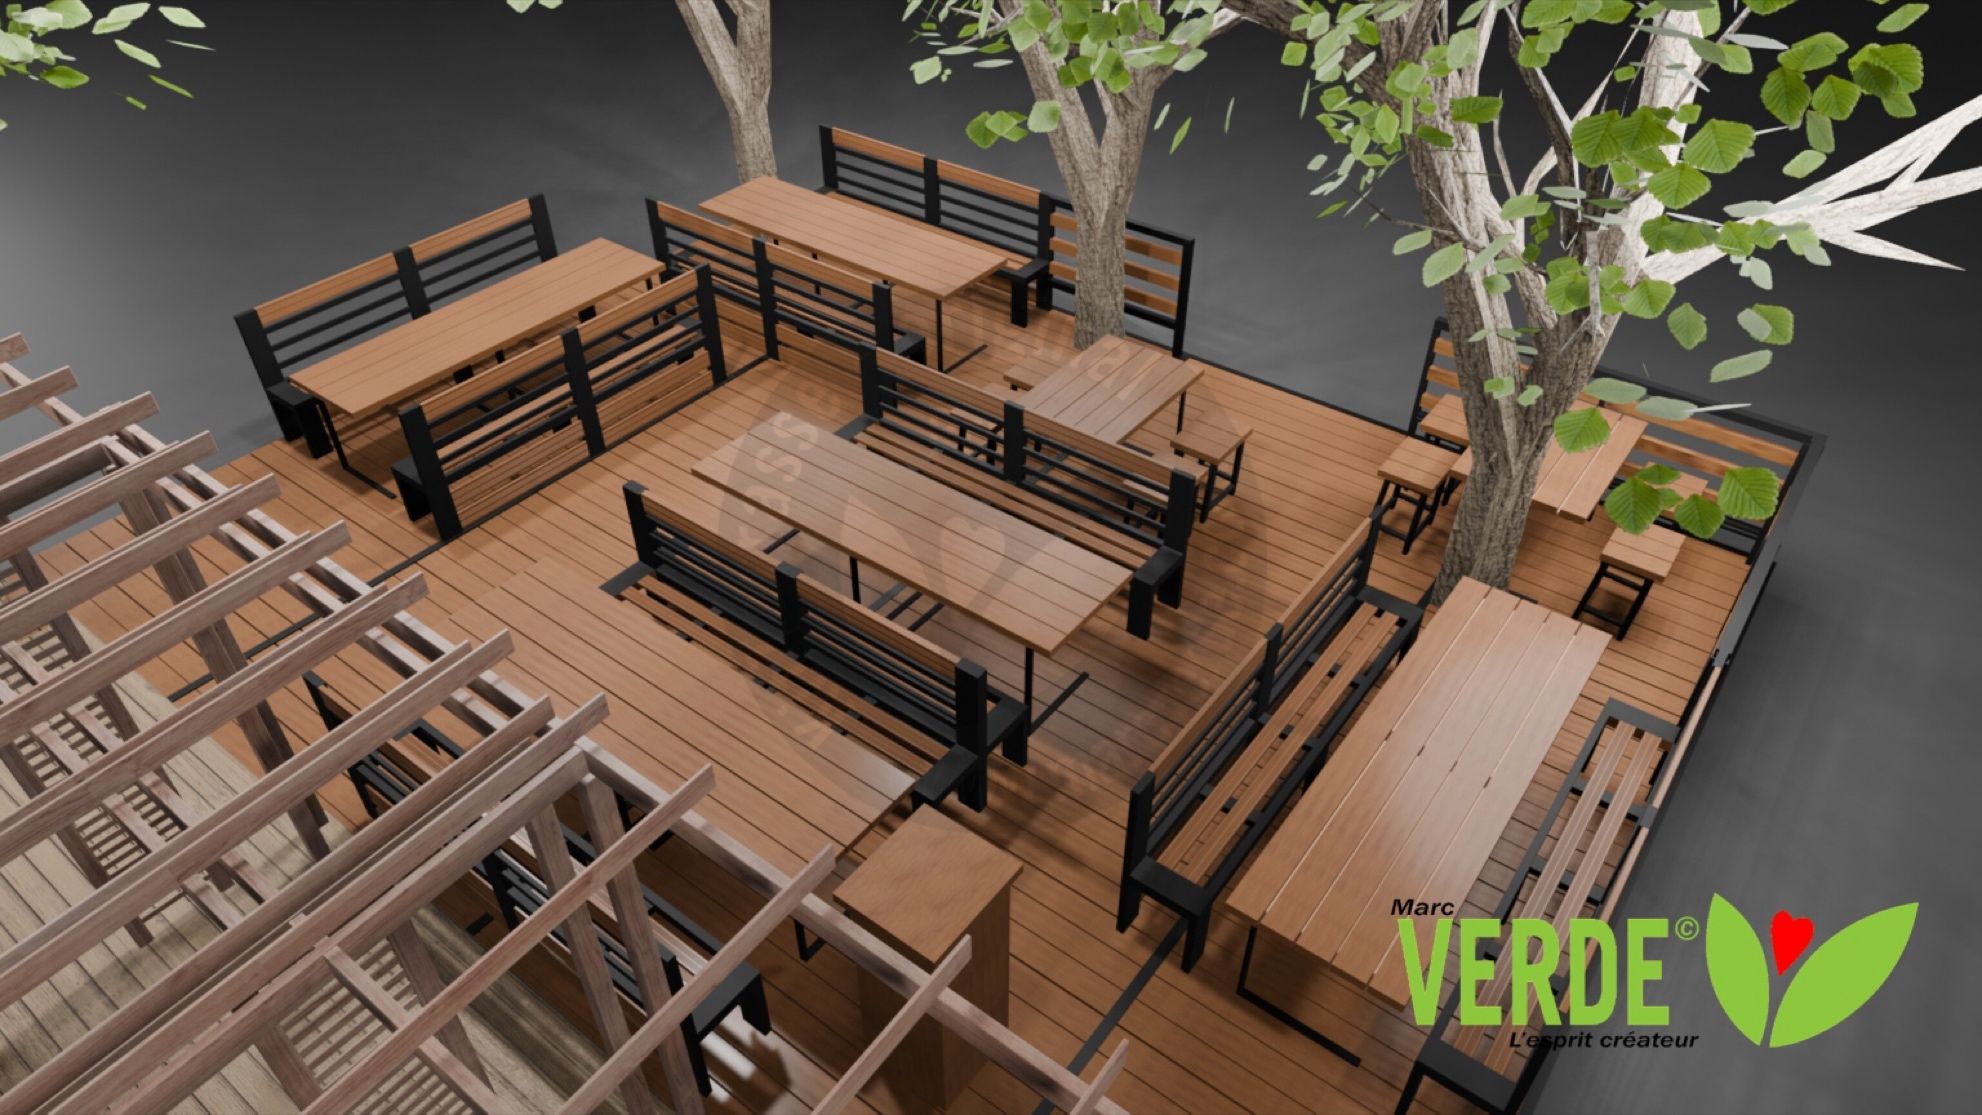 Illustration de l’aménagement d’une terrasse en bois avec des bancs et des tables noires et bois, entourant des arbres, conçue par Marc Verde, spécialisée dans l’aménagement extérieur.